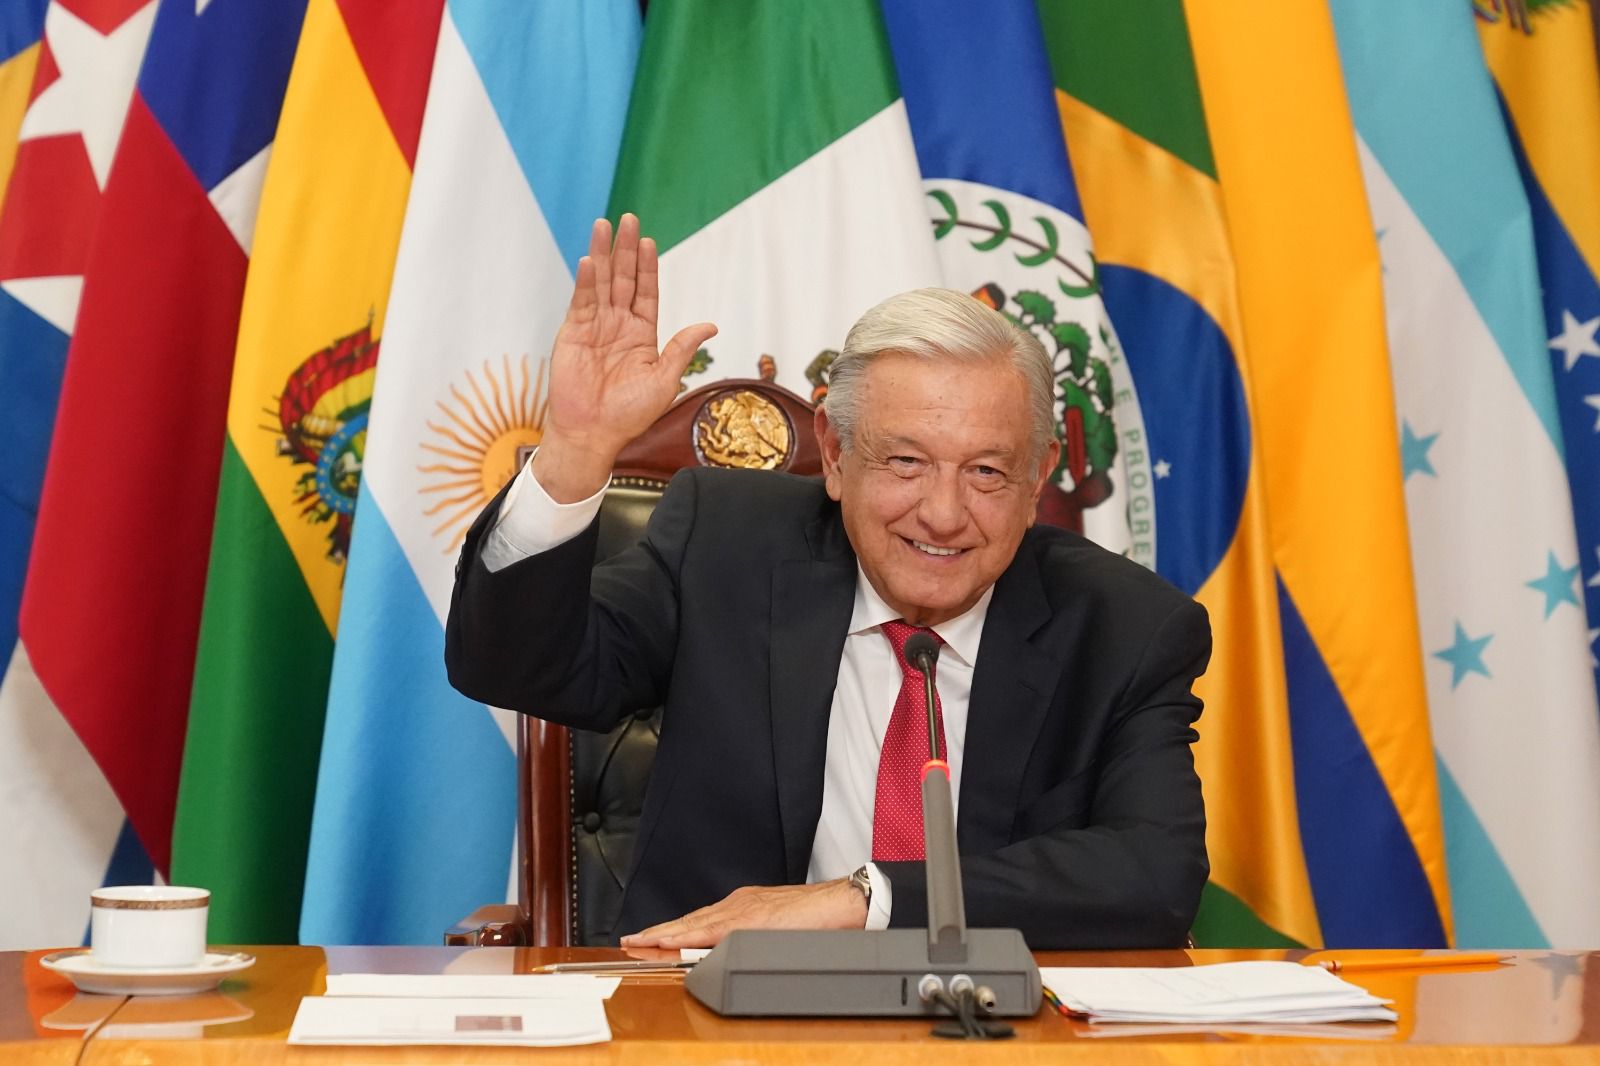 Países latinoamericanos llegan a acuerdos para intercambio comercial